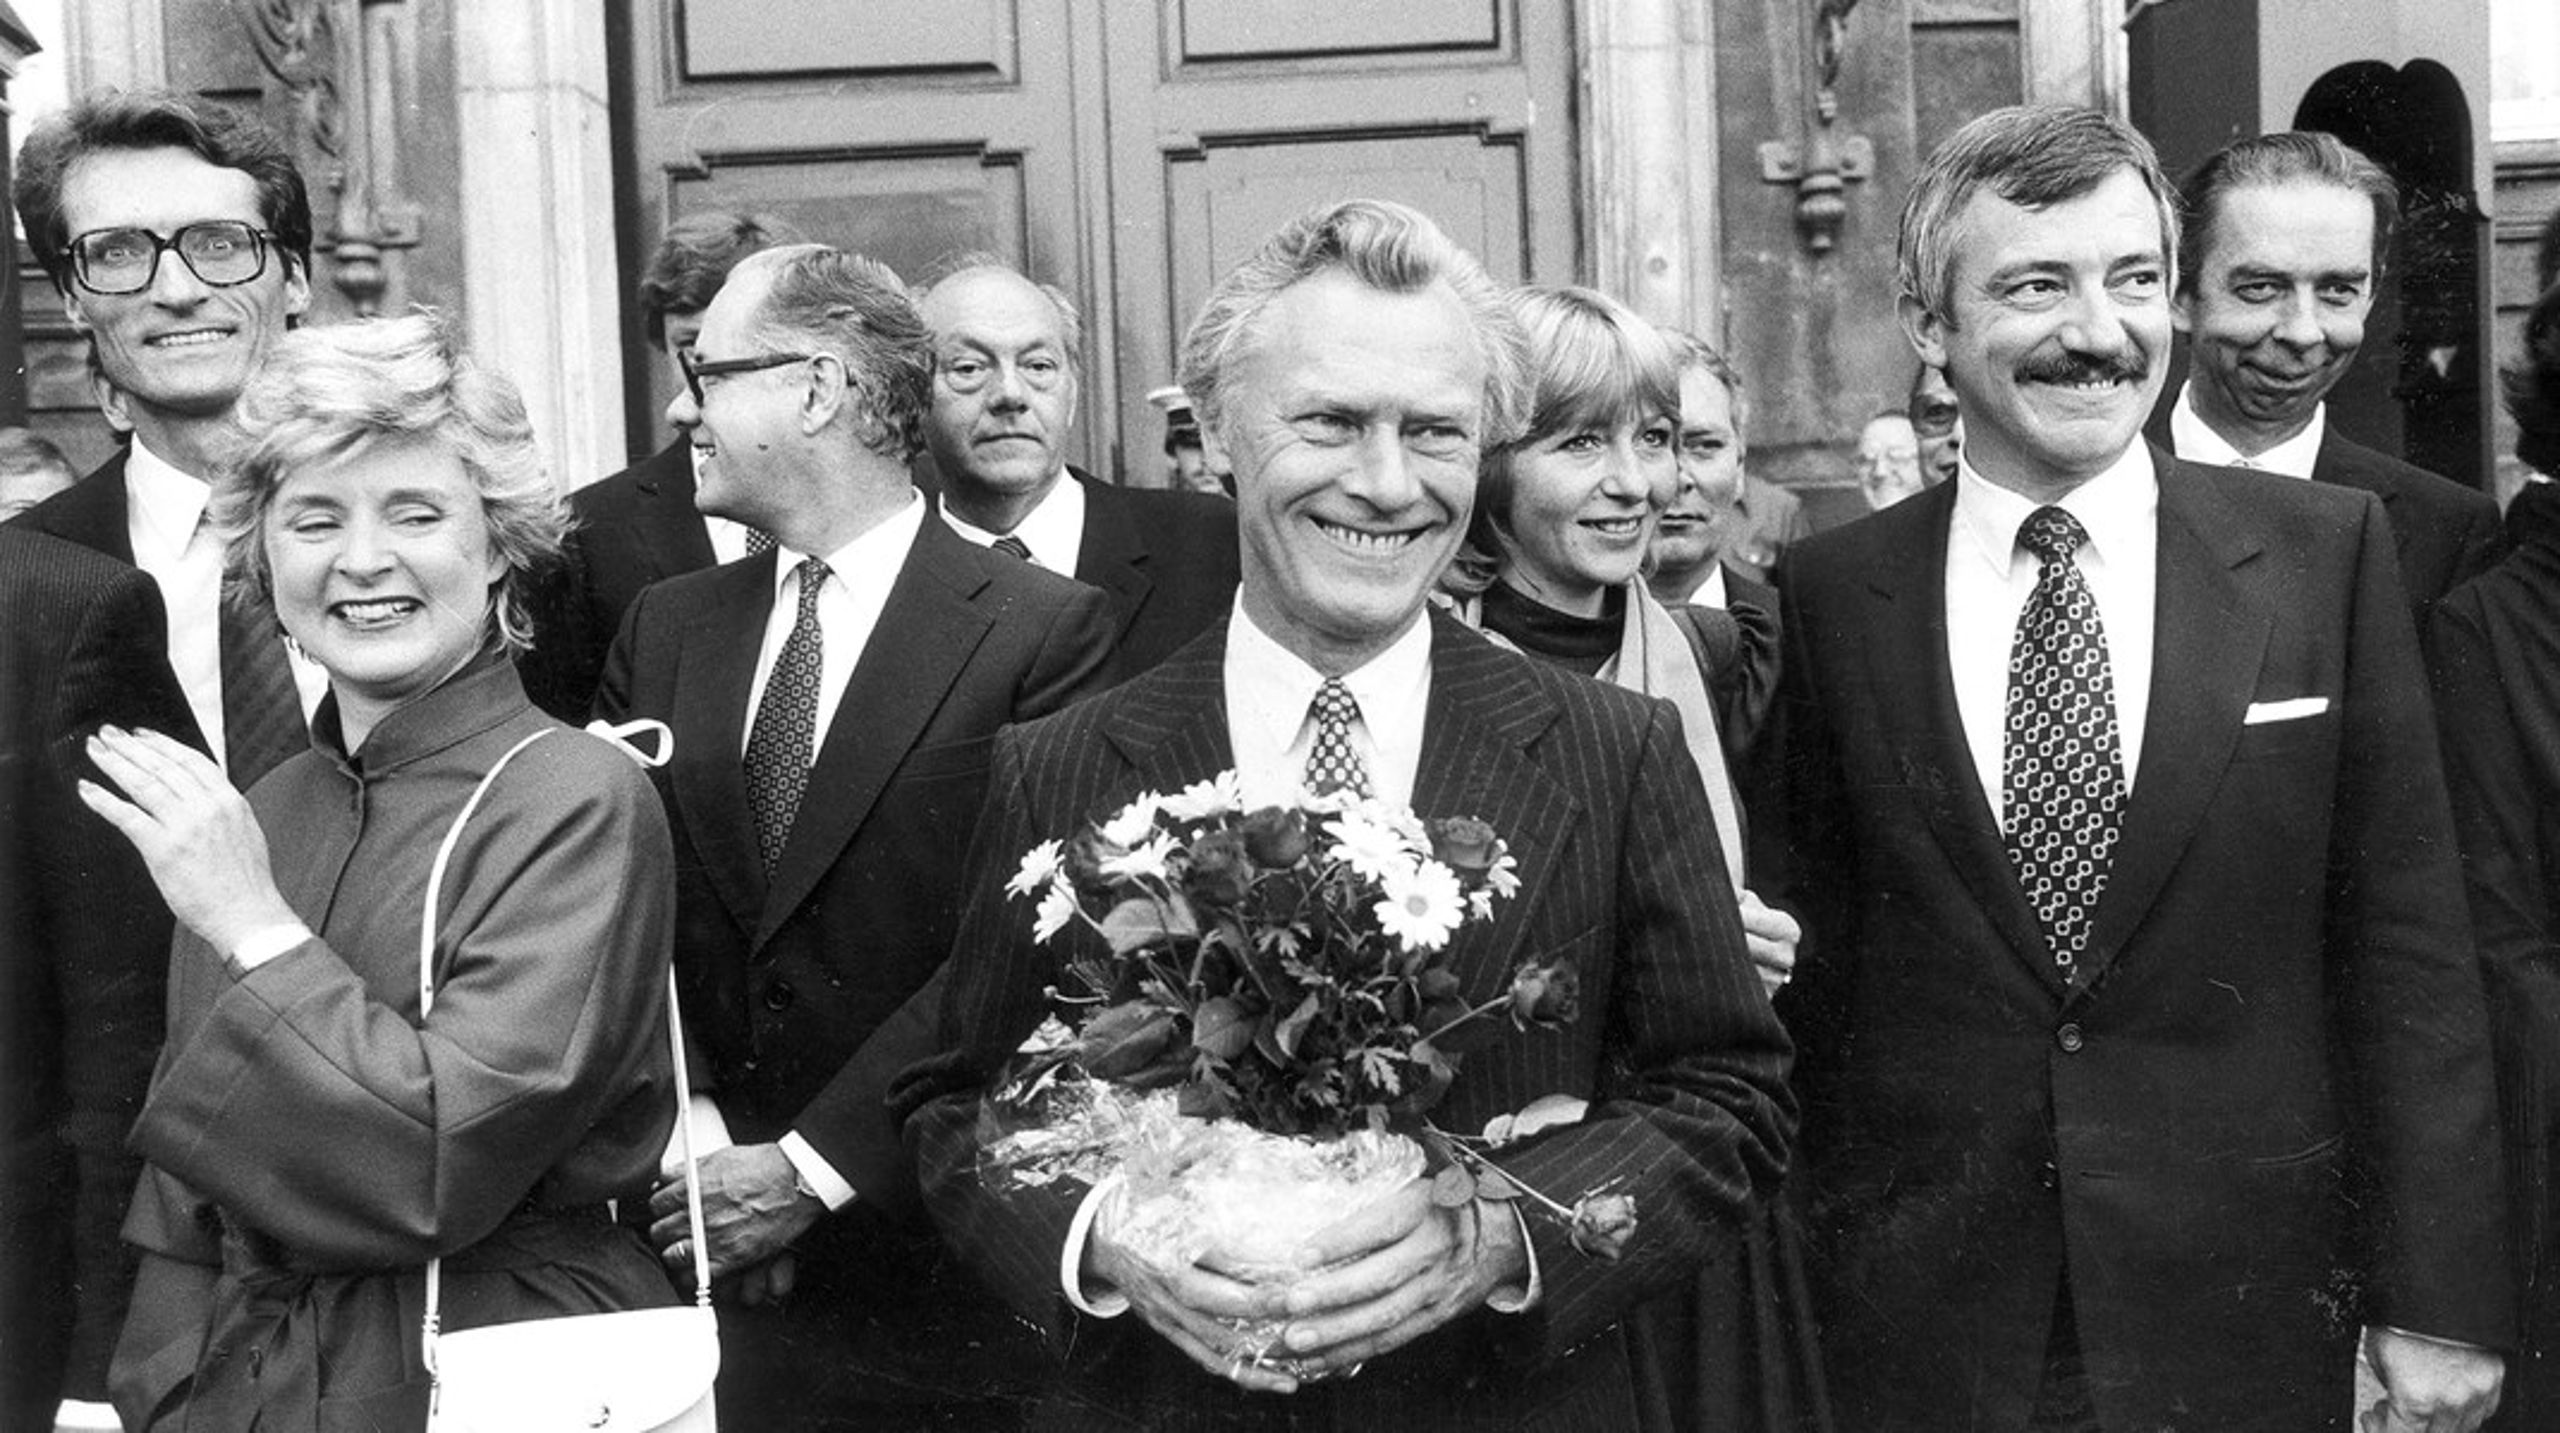 Arkivfoto. En nyudnævnt konservativ statsminister Poul Schlüter kommer ud fra audiens hos dronningen i september 1982.